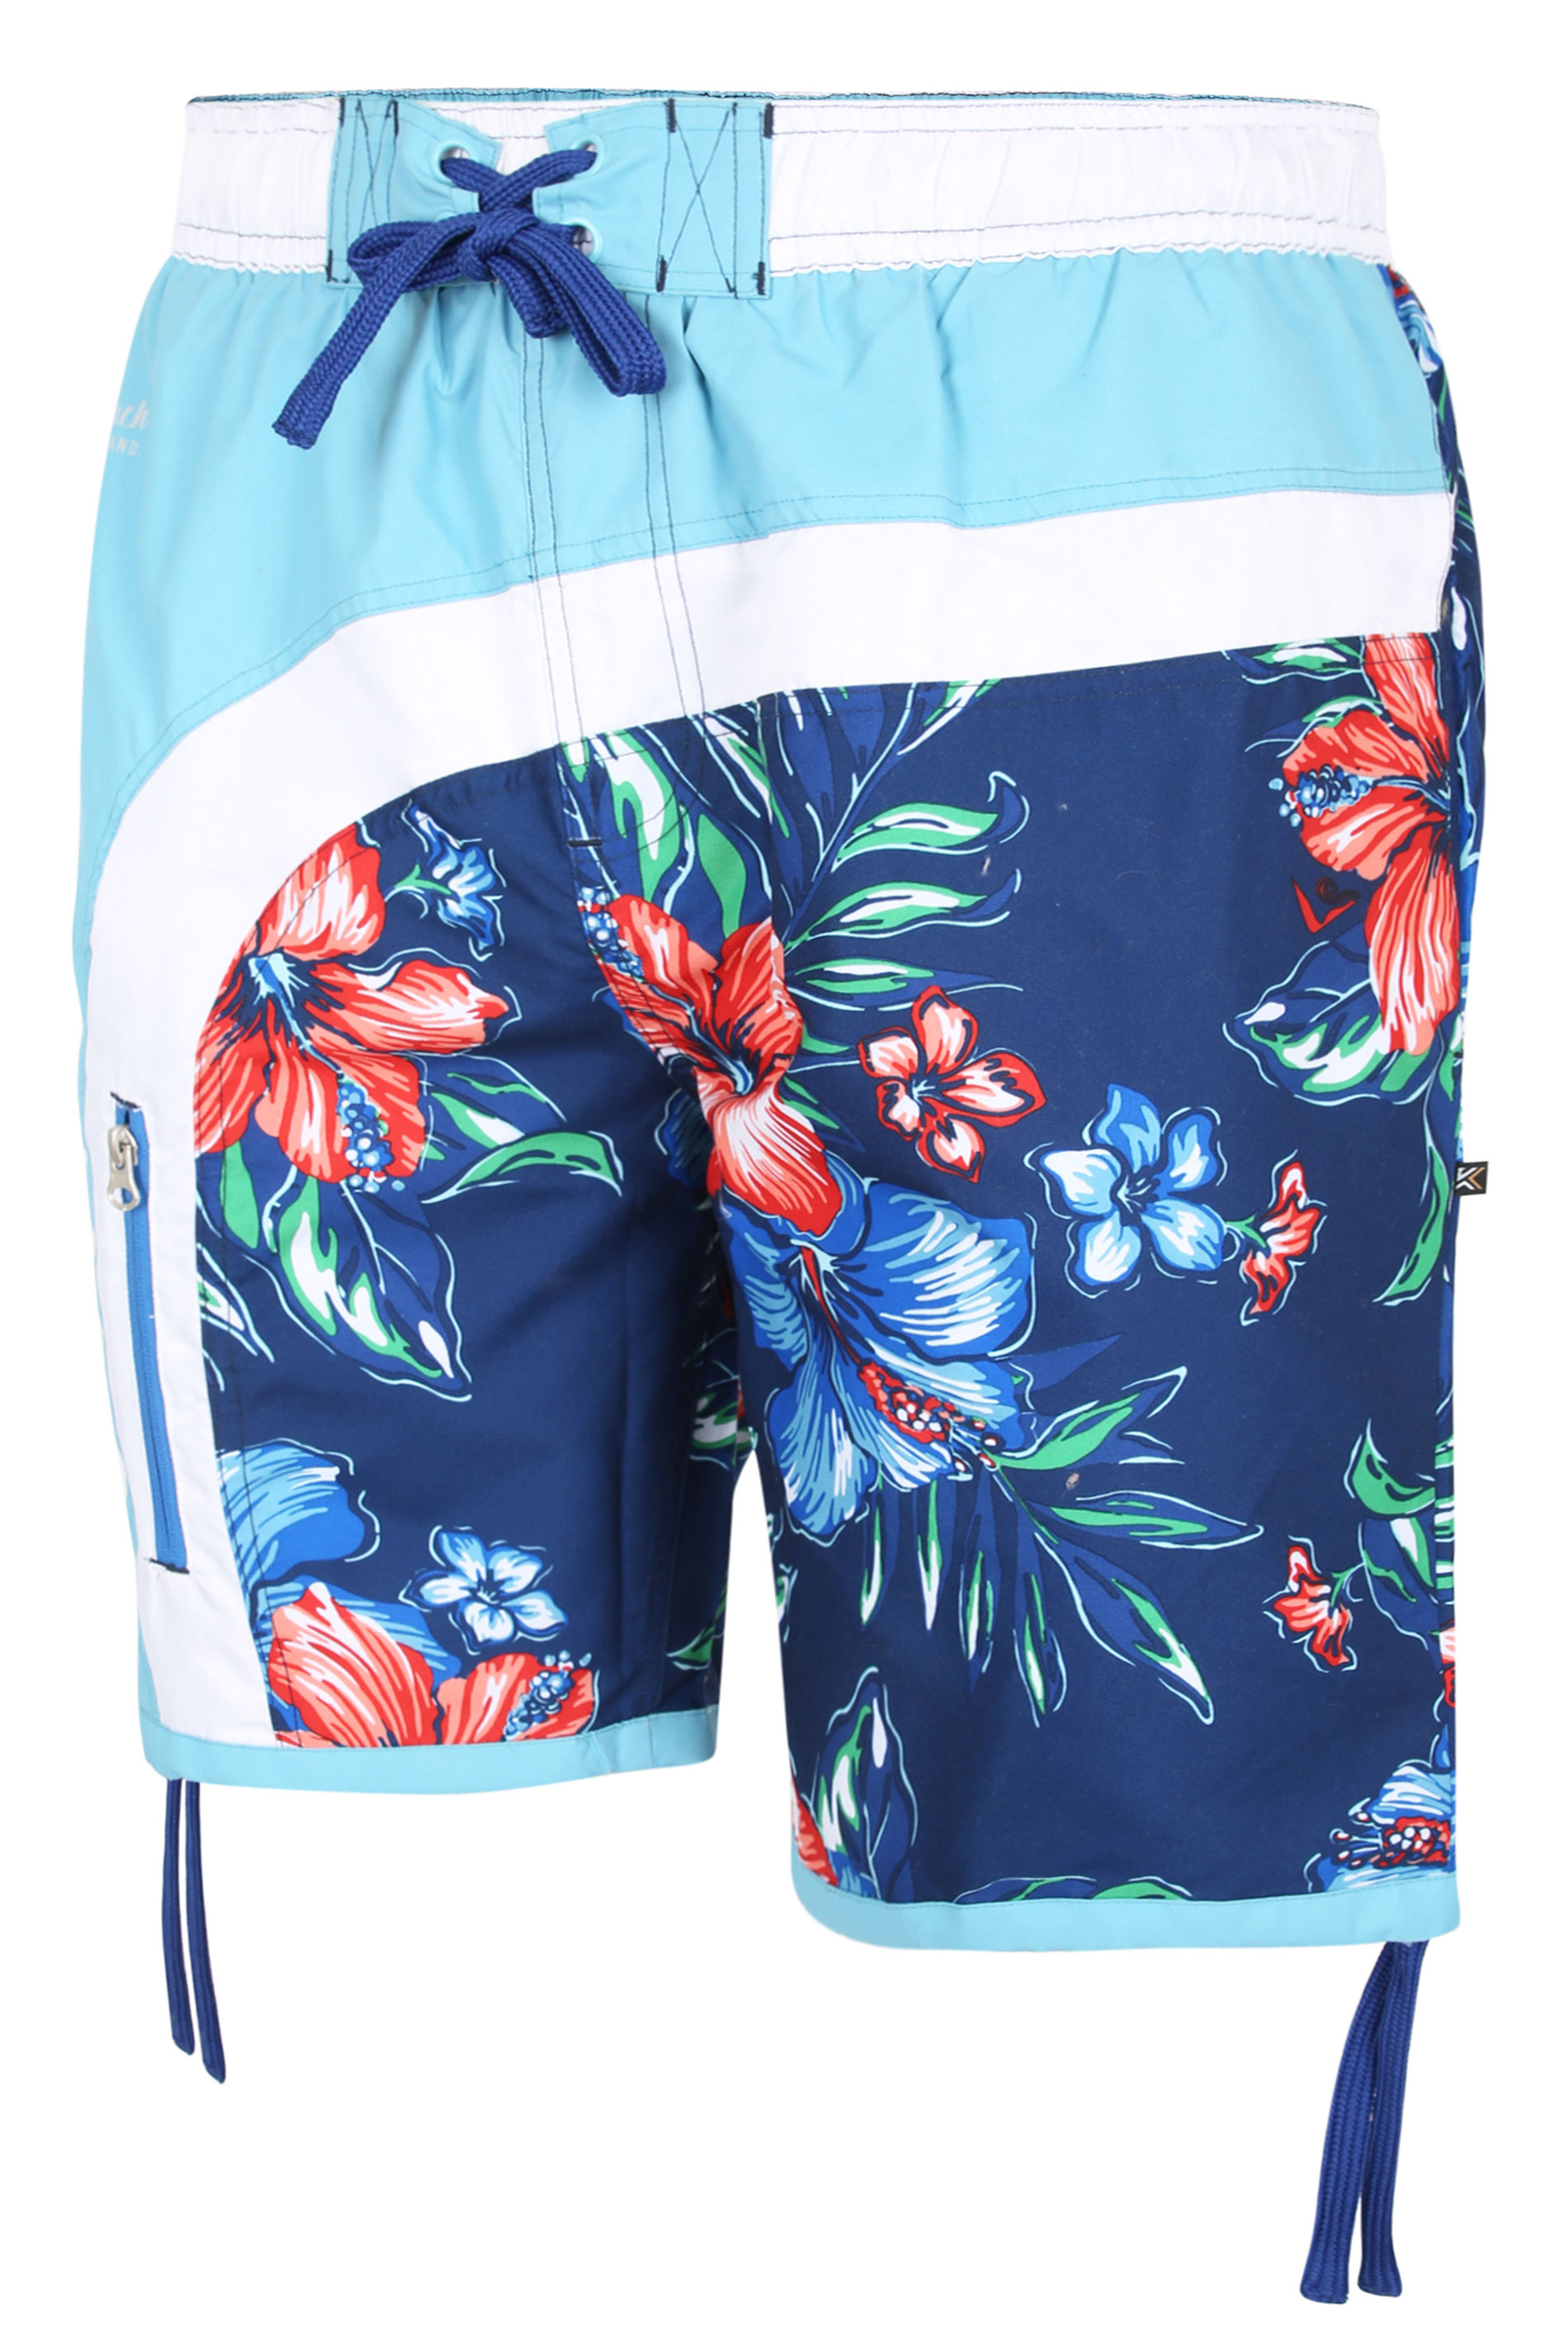 KAM Big & Tall Blue Floral Print Board Swim Shorts_F.jpg